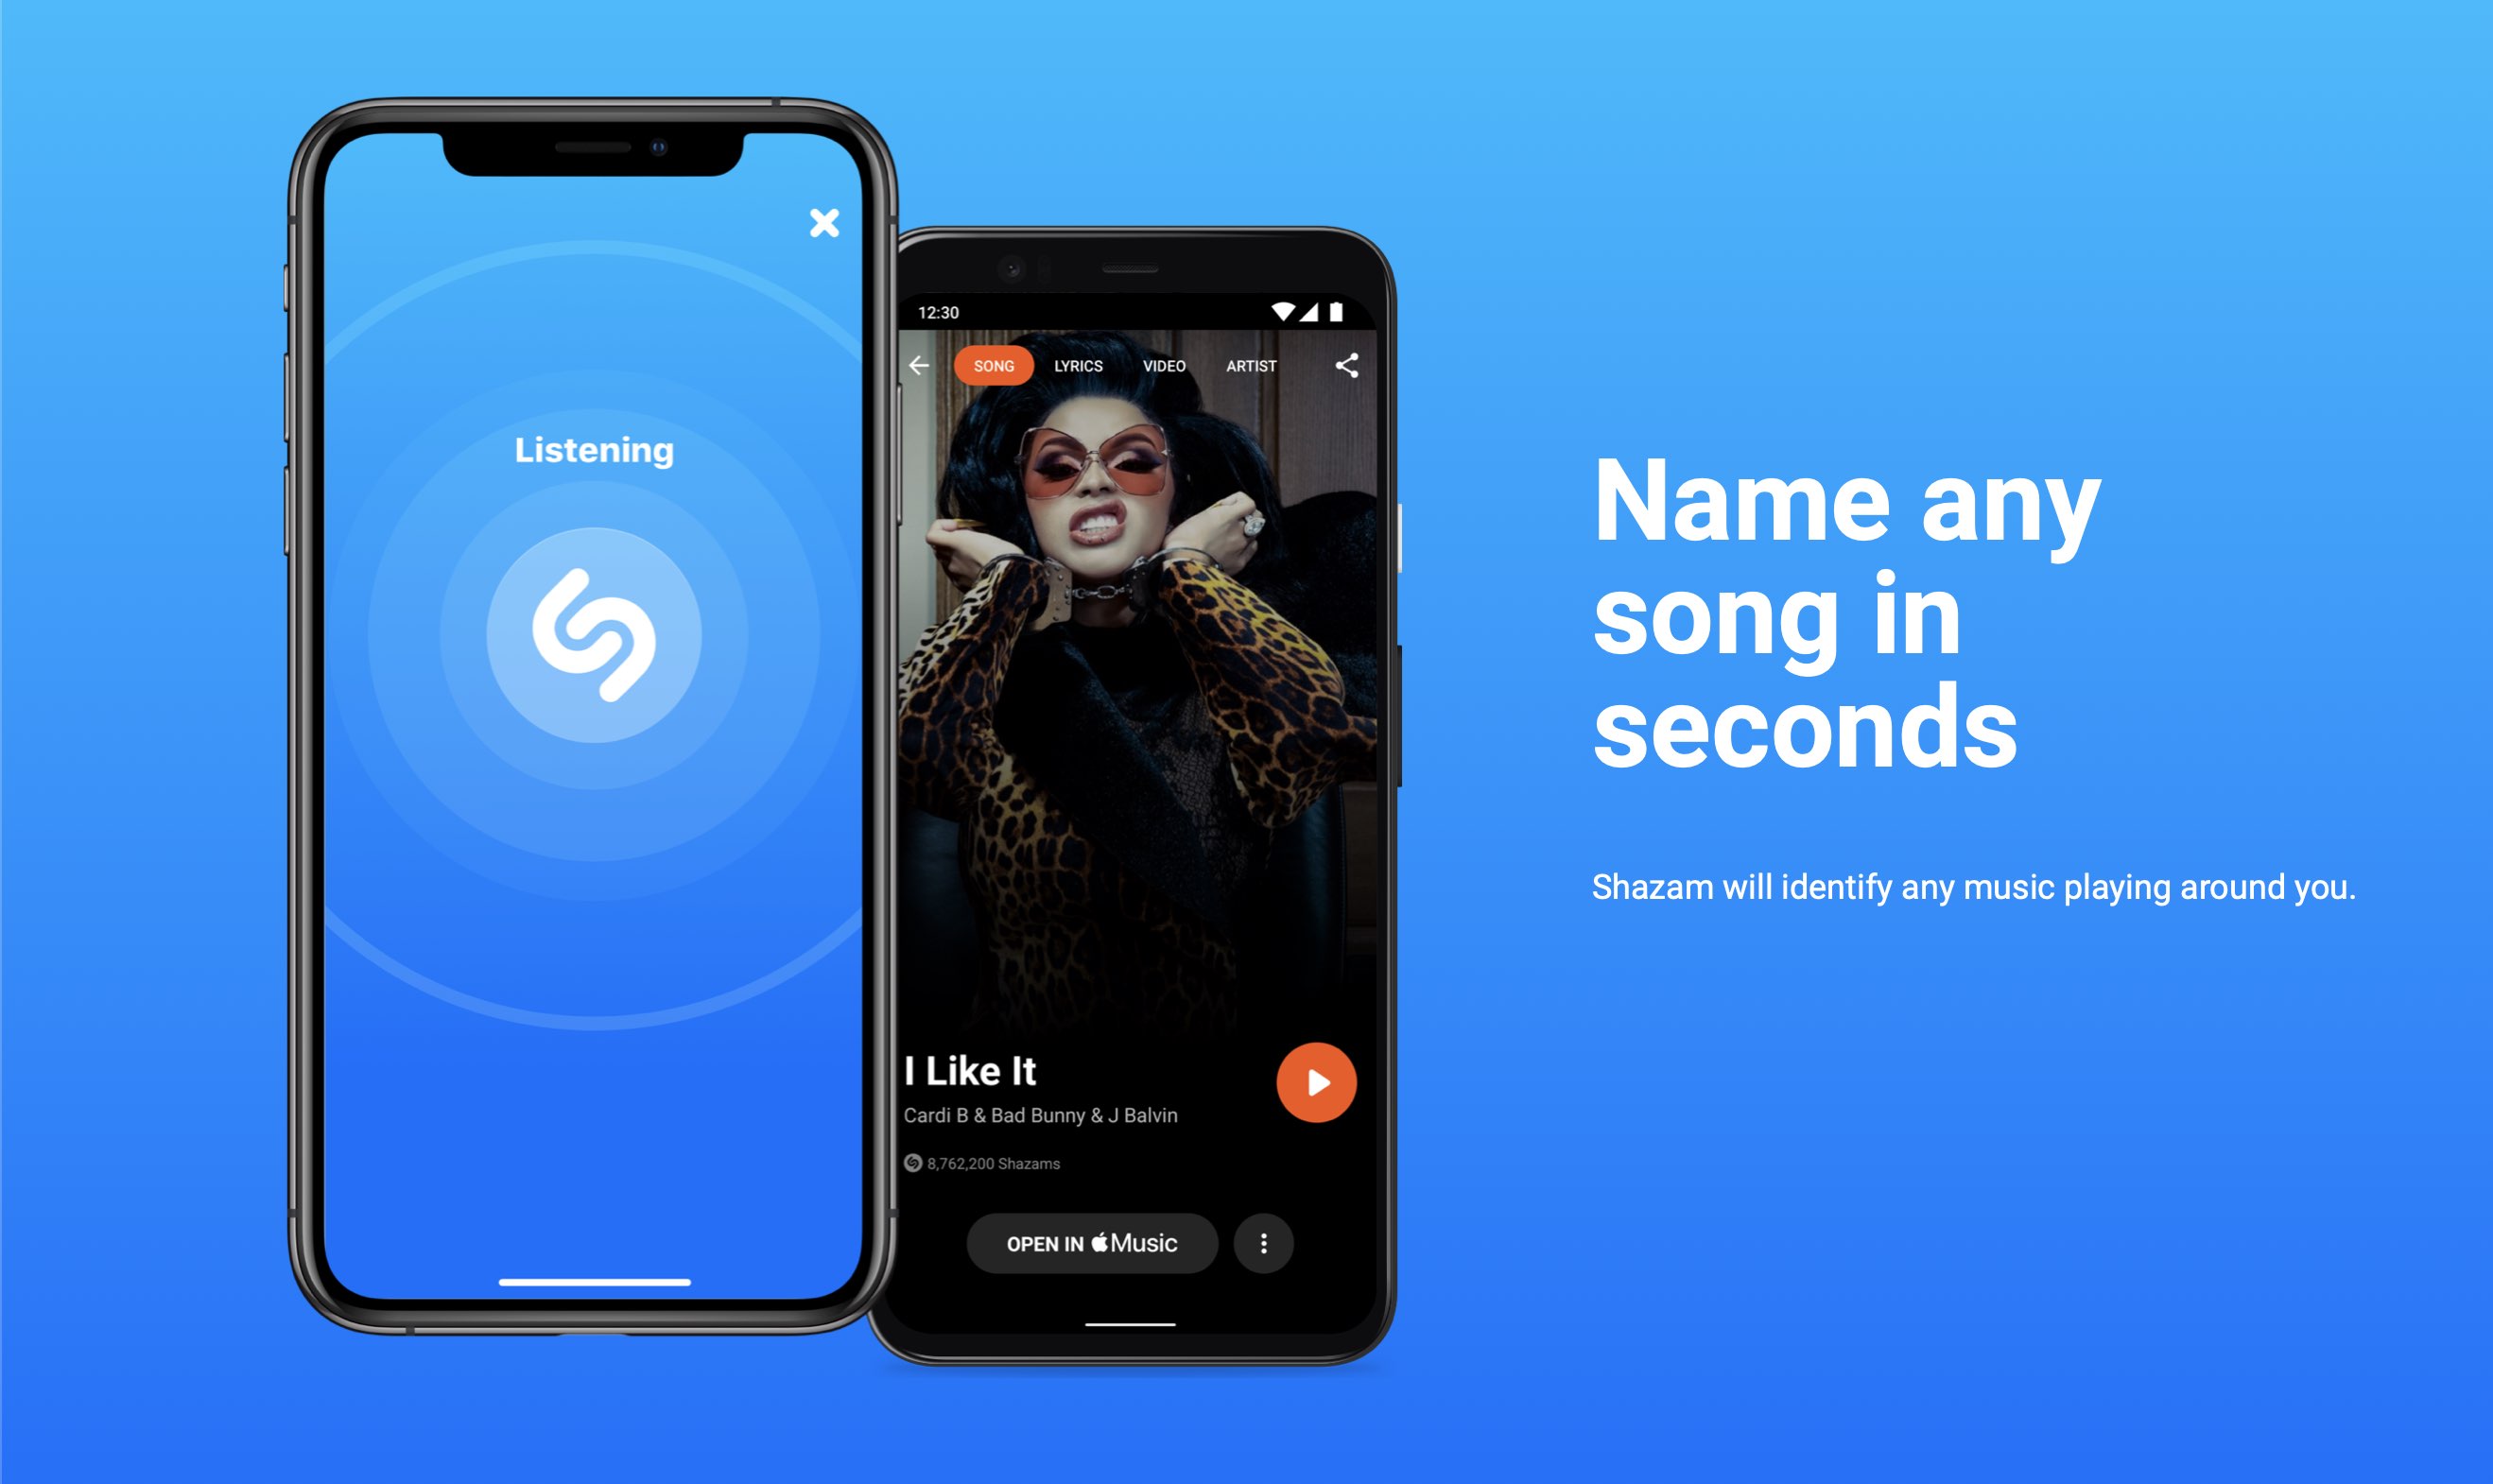 Un teaser présentant Shazam pour iPhone et Android, sur un fond dégradé bleu clair